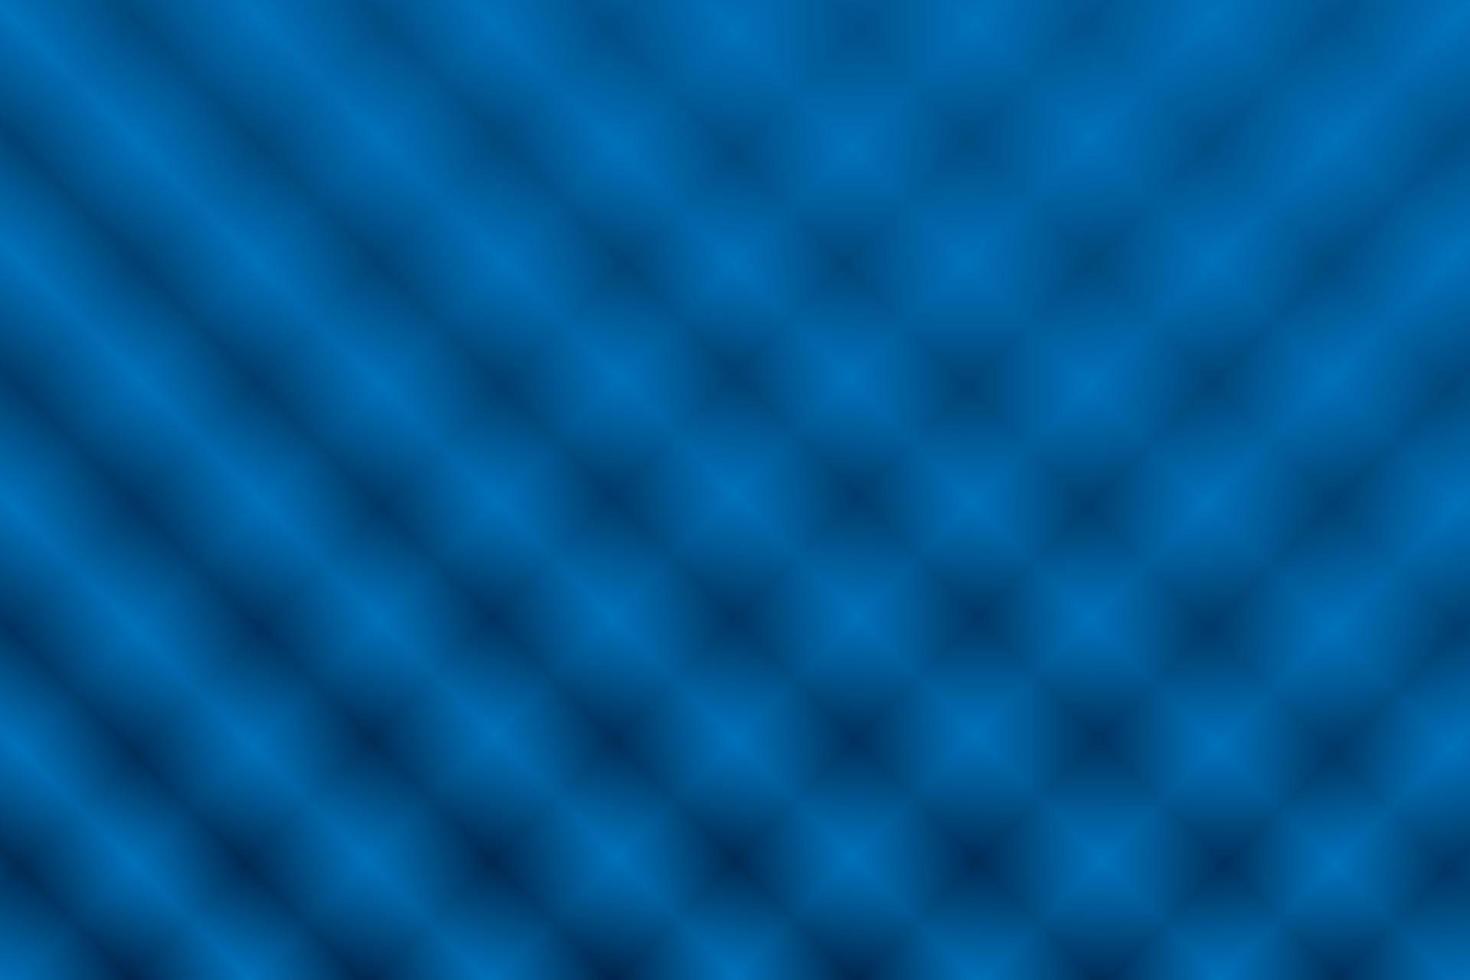 asstract fundo geométrico de cor azul e branco. ilustração vetorial. vetor